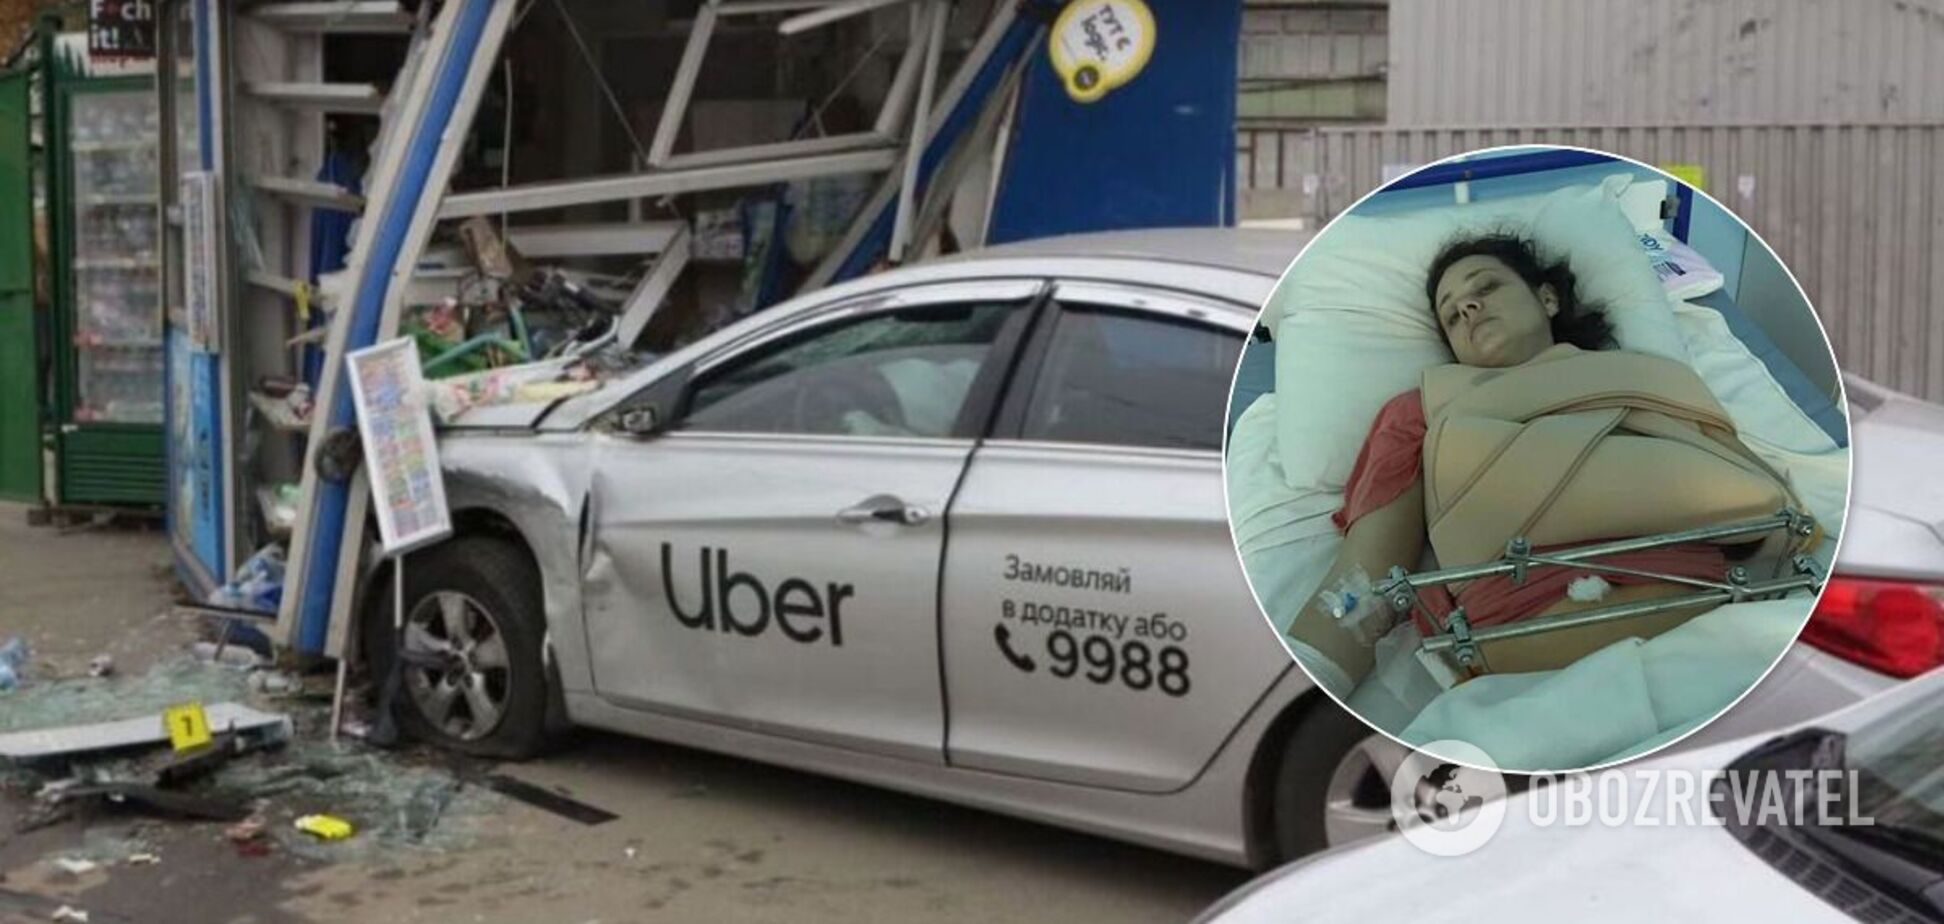 Близкие Юлии Глущенко, которая выжила в ДТП с такси Uber в Киеве, обратились за помощью